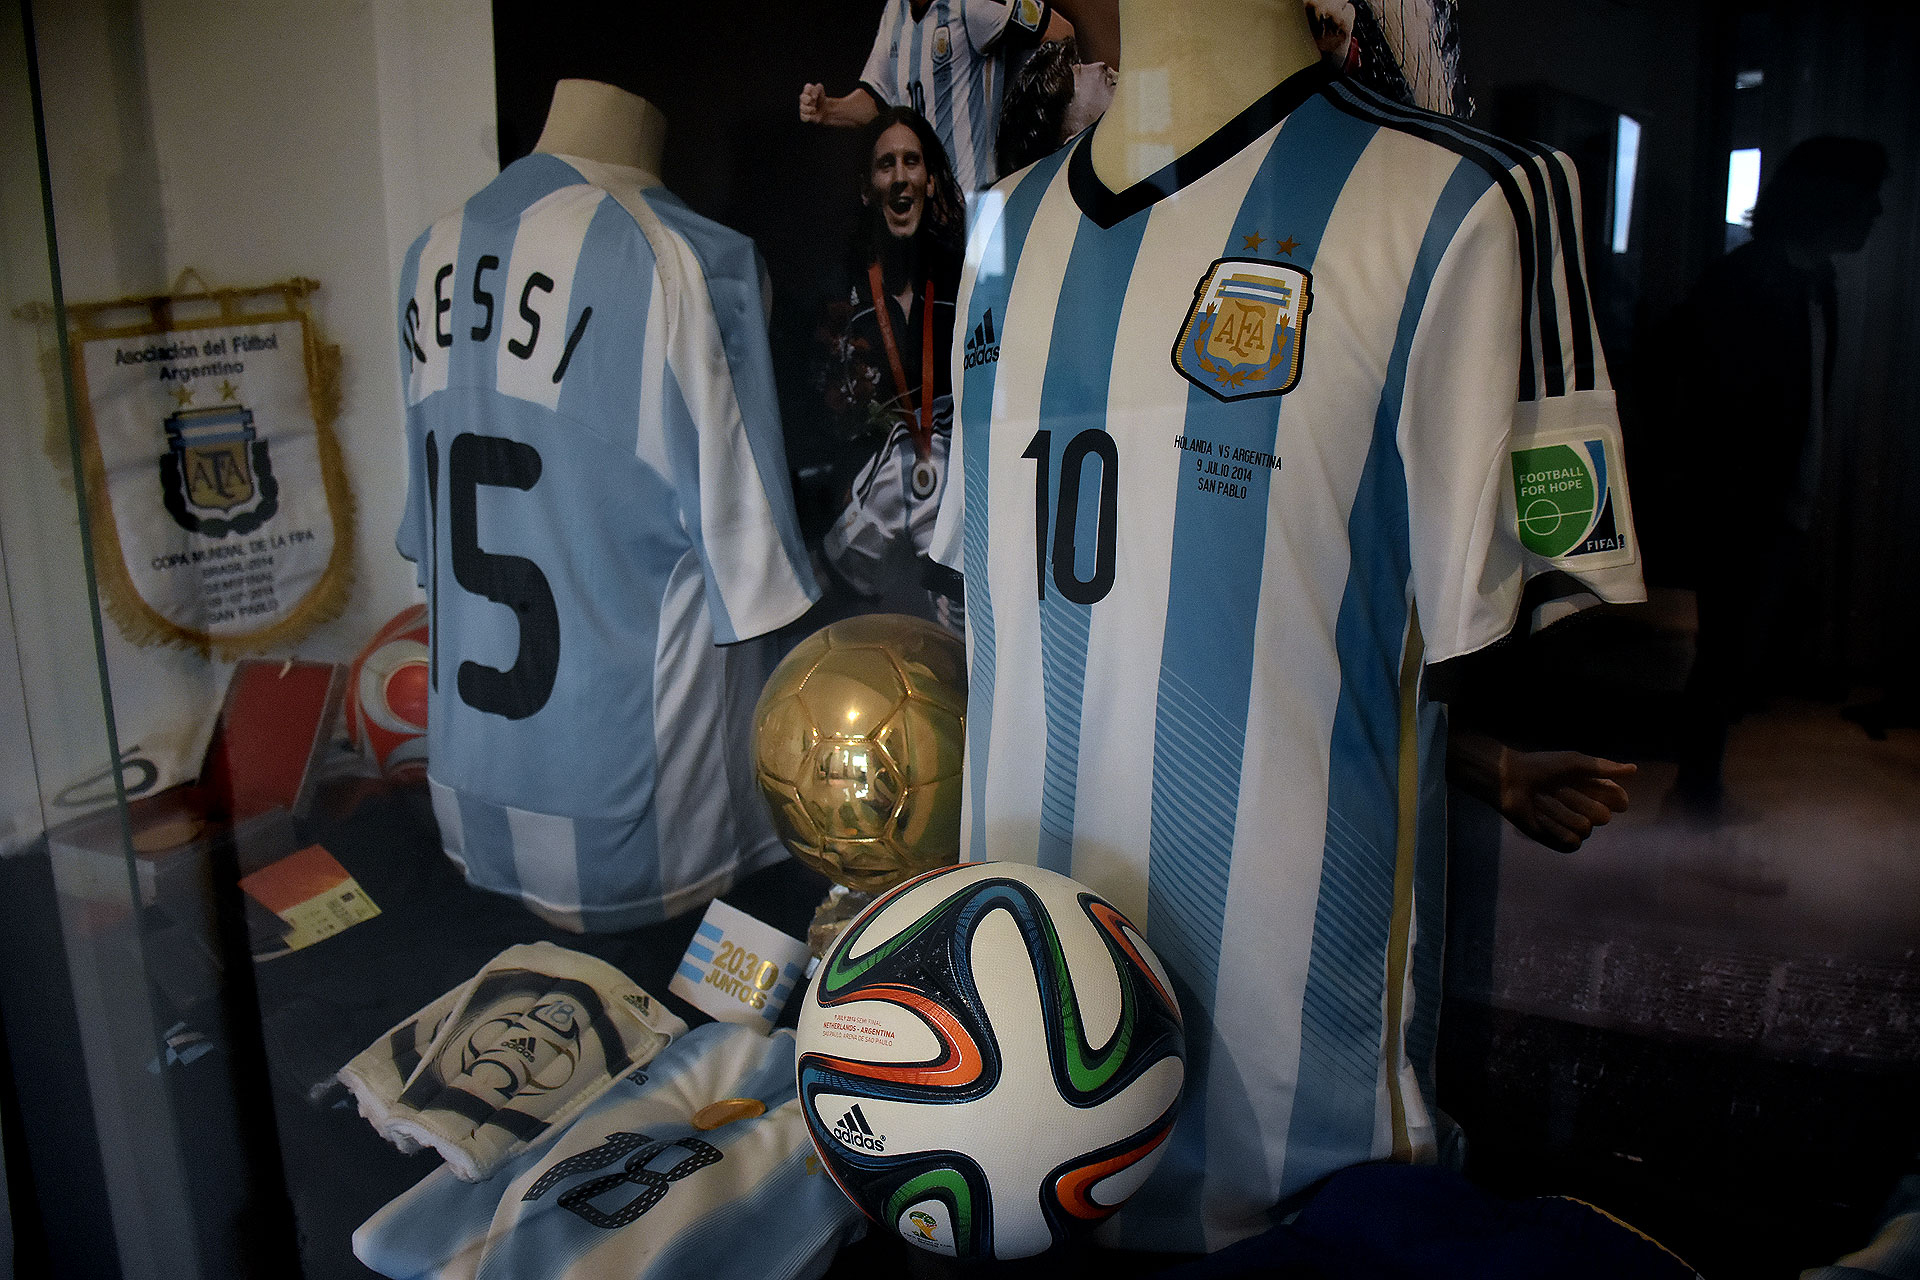 Una de las camisetas utilizadas por Lionel Messi en Brasil 2014 (Nicolas Stulberg)